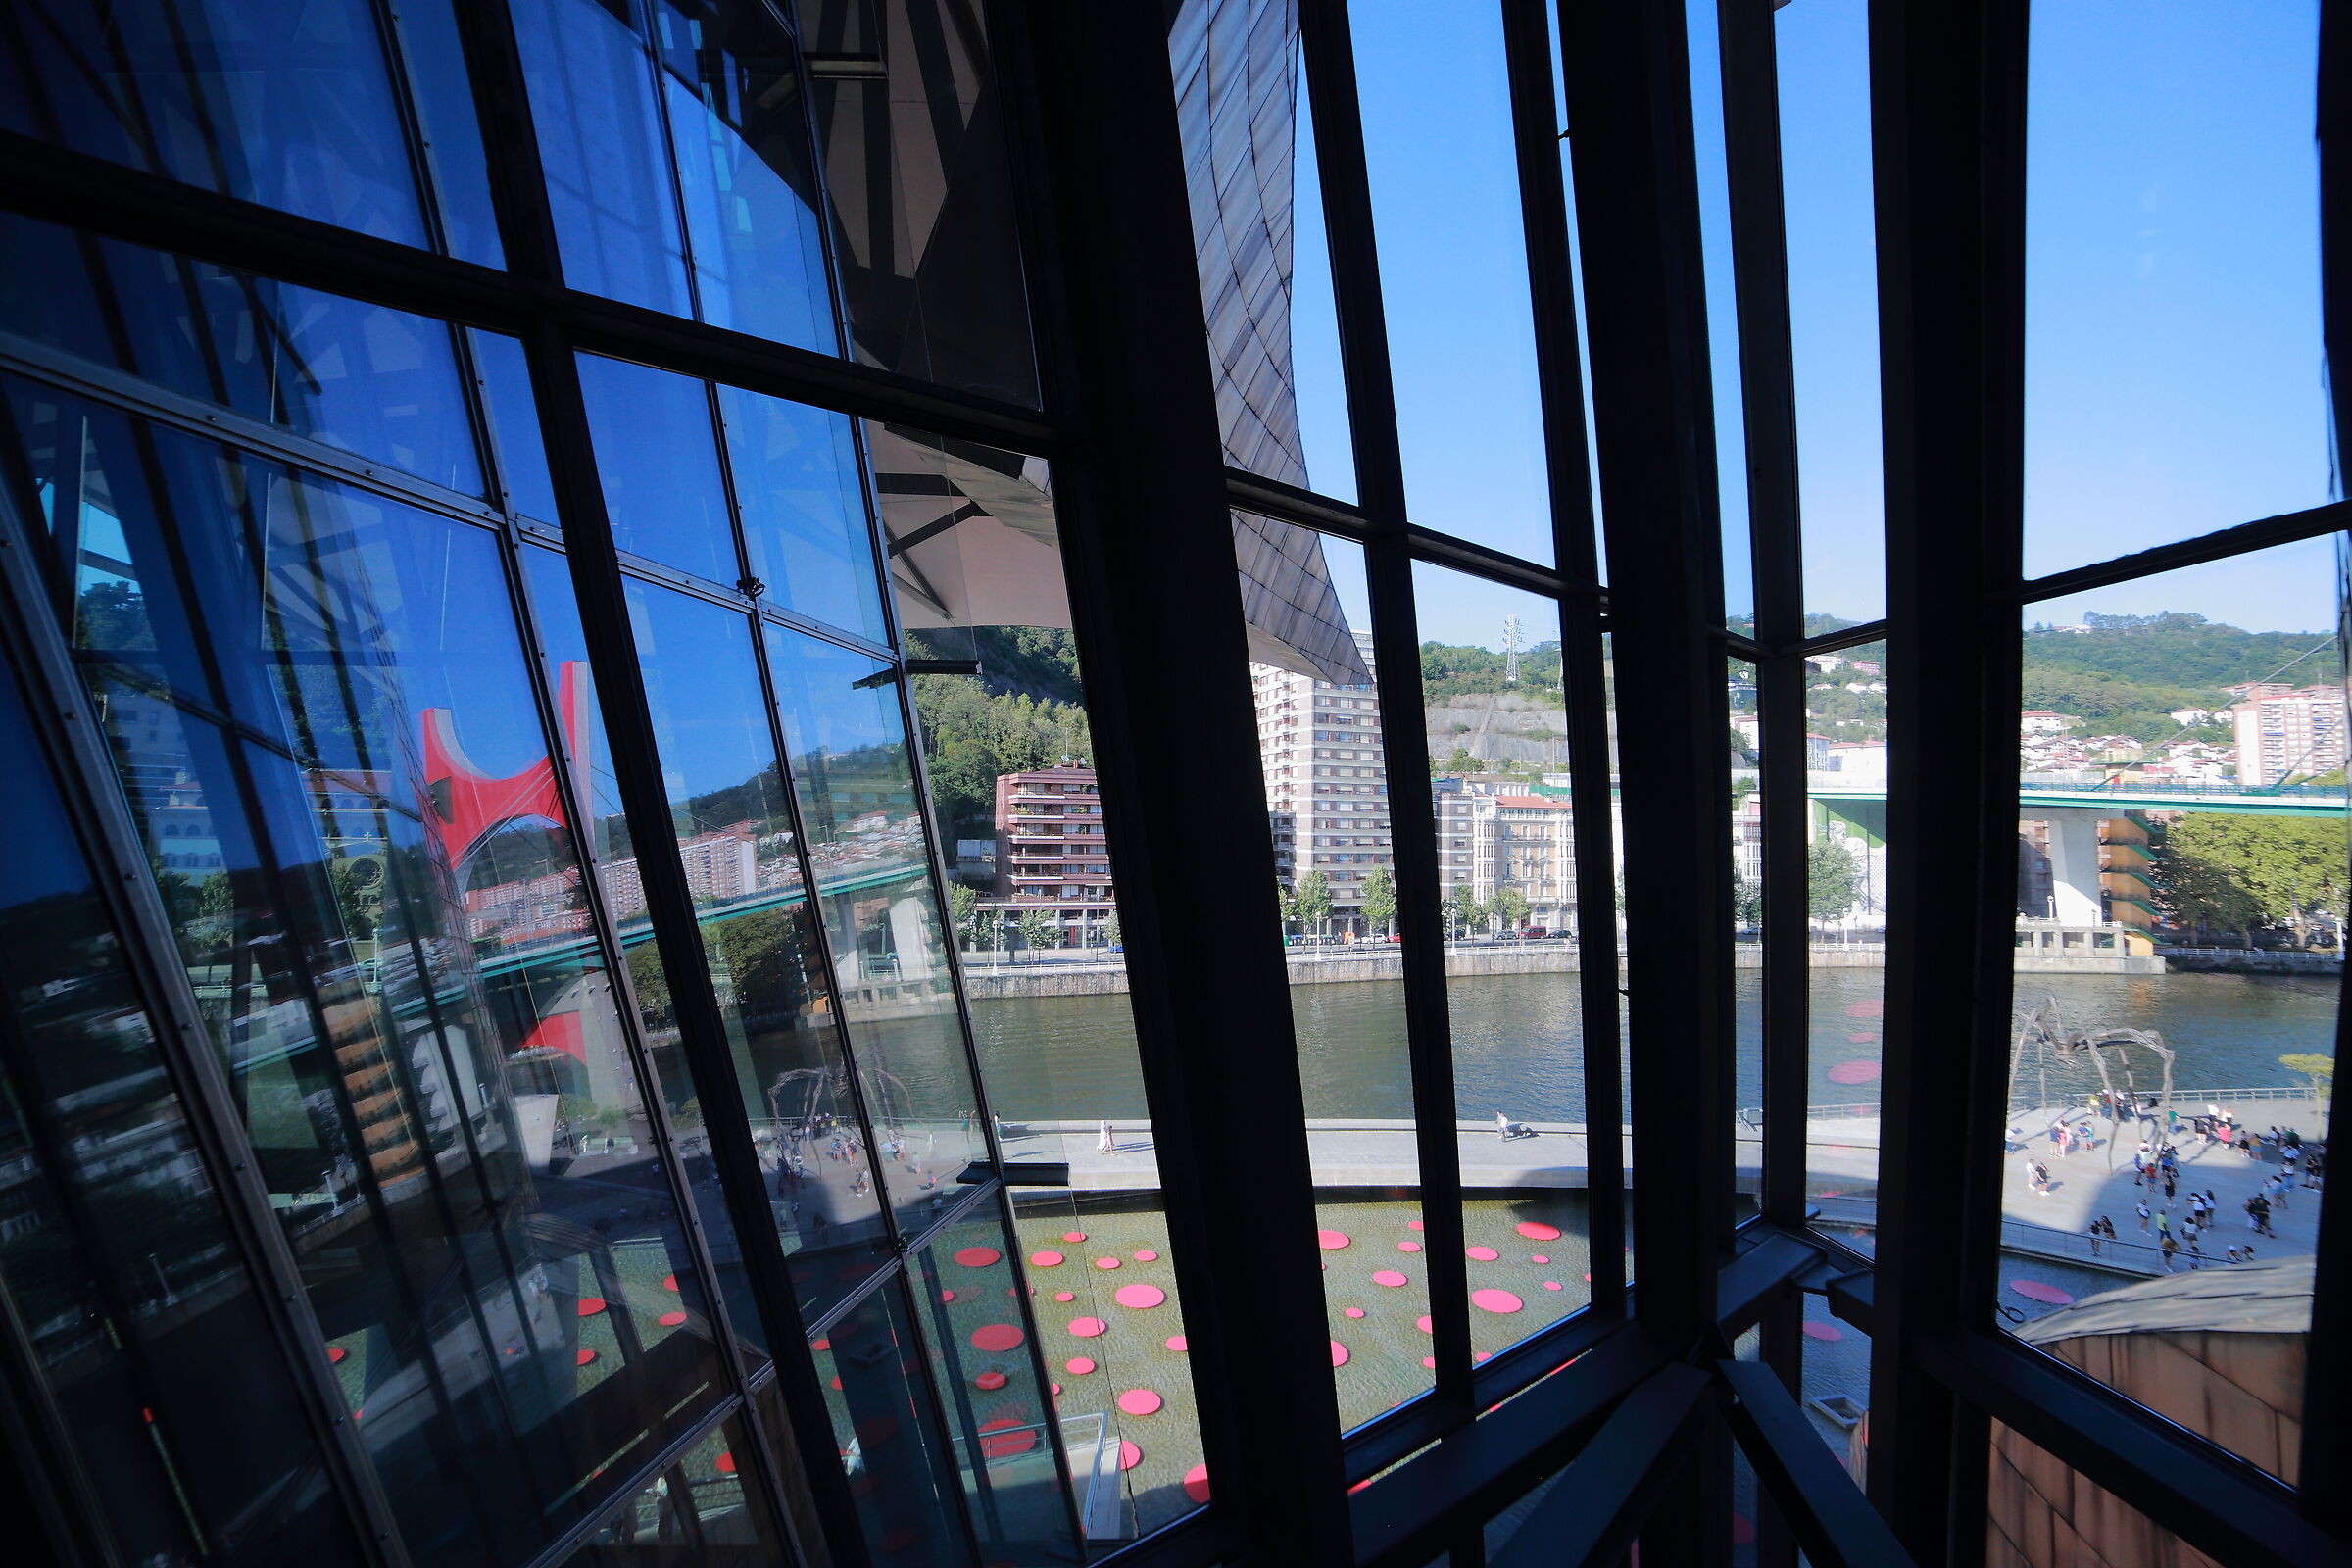 Trasparenza e riflesso dalle vetrate del Guggenheim...